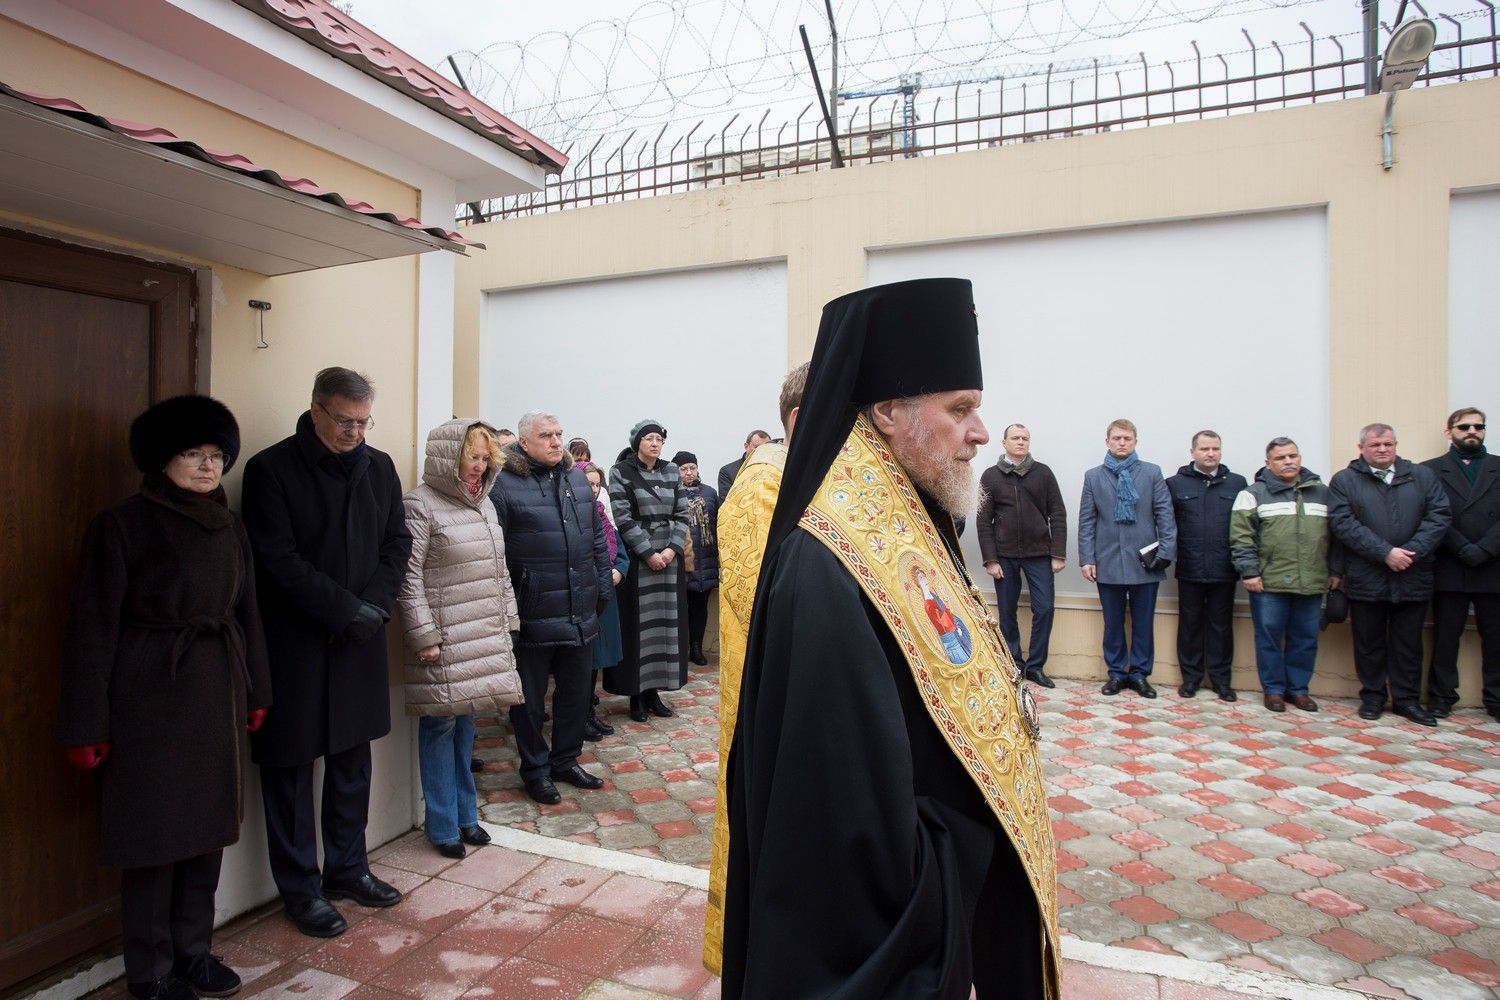 Высокопреосвященный архиепископ Александр совершил молебное пение по случаю Дня дипломатического работника России.